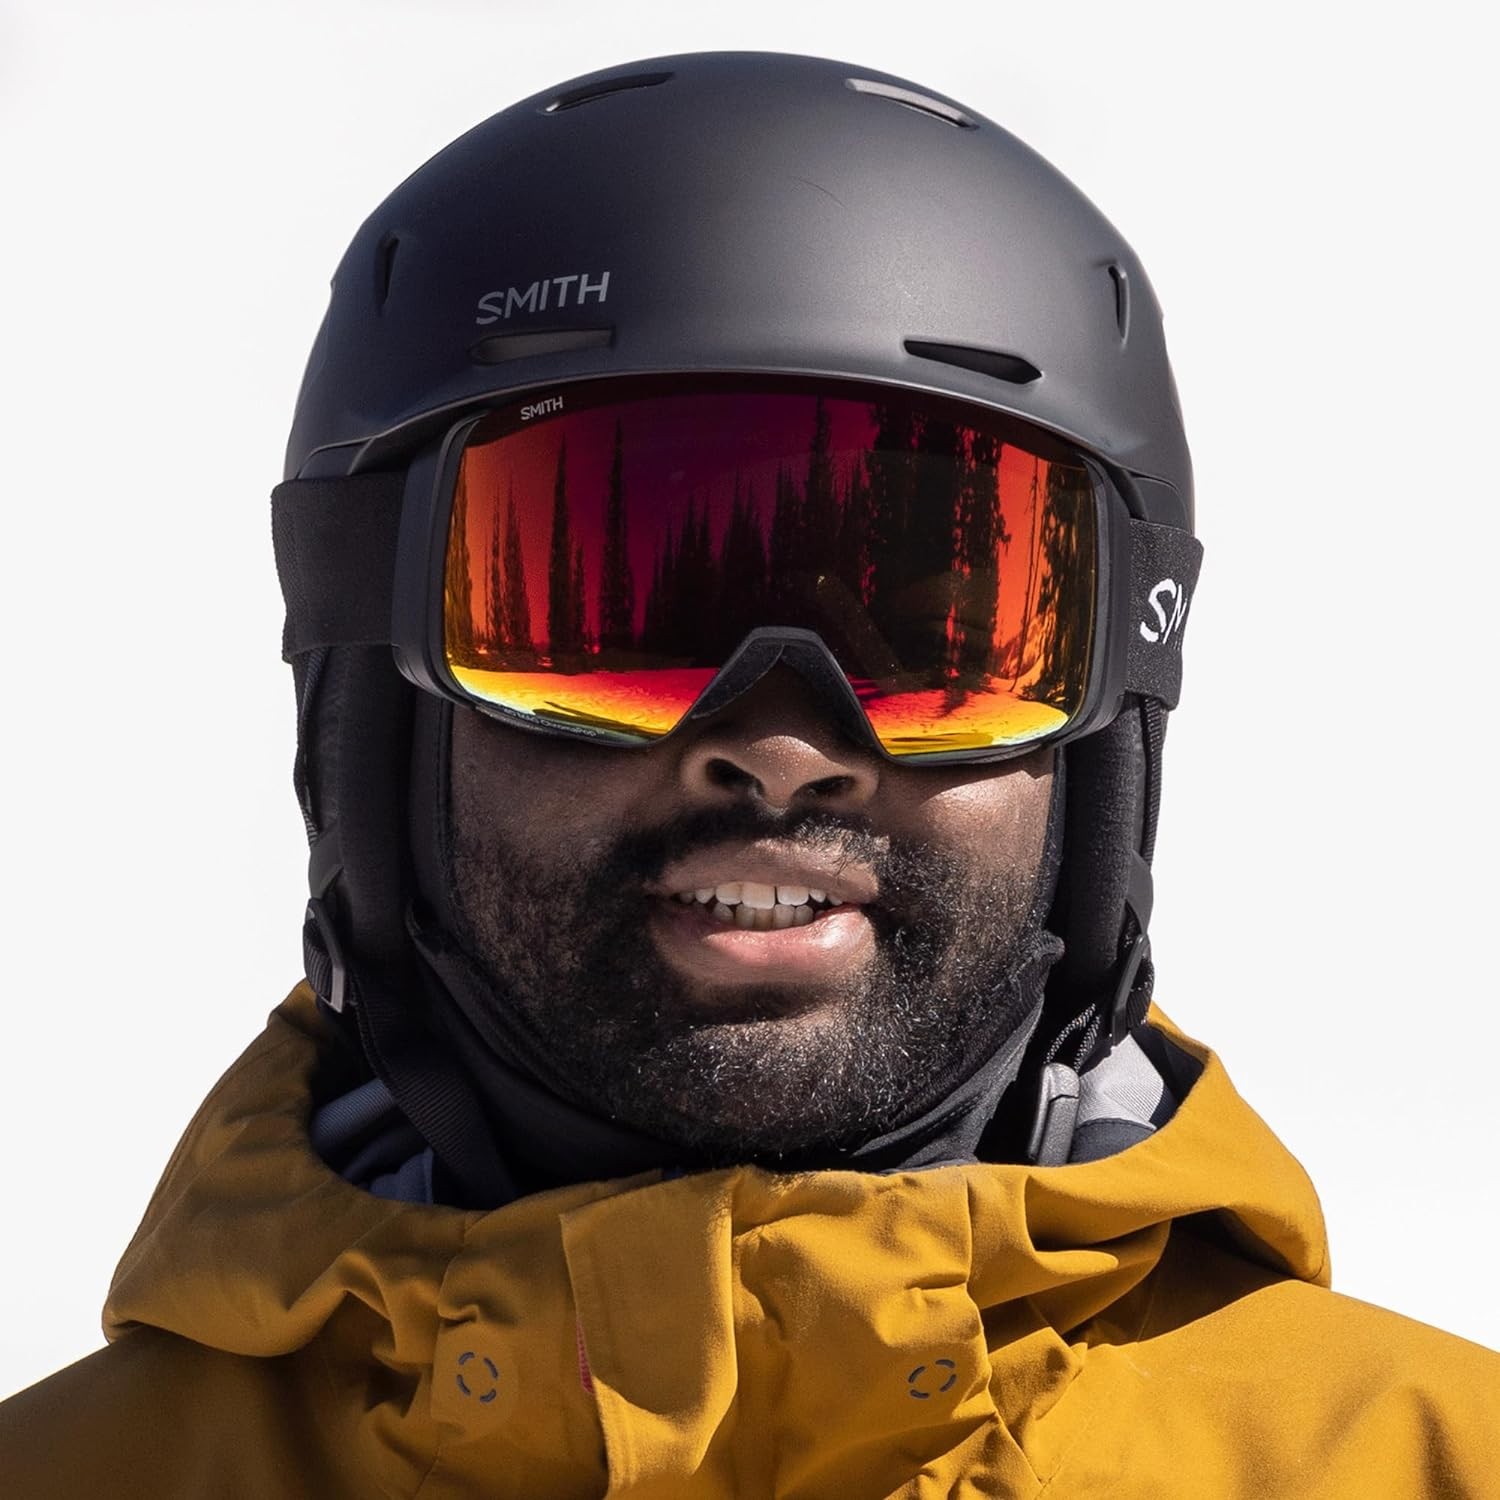 Smith 4D MAG S Snowboard/Ski Goggles